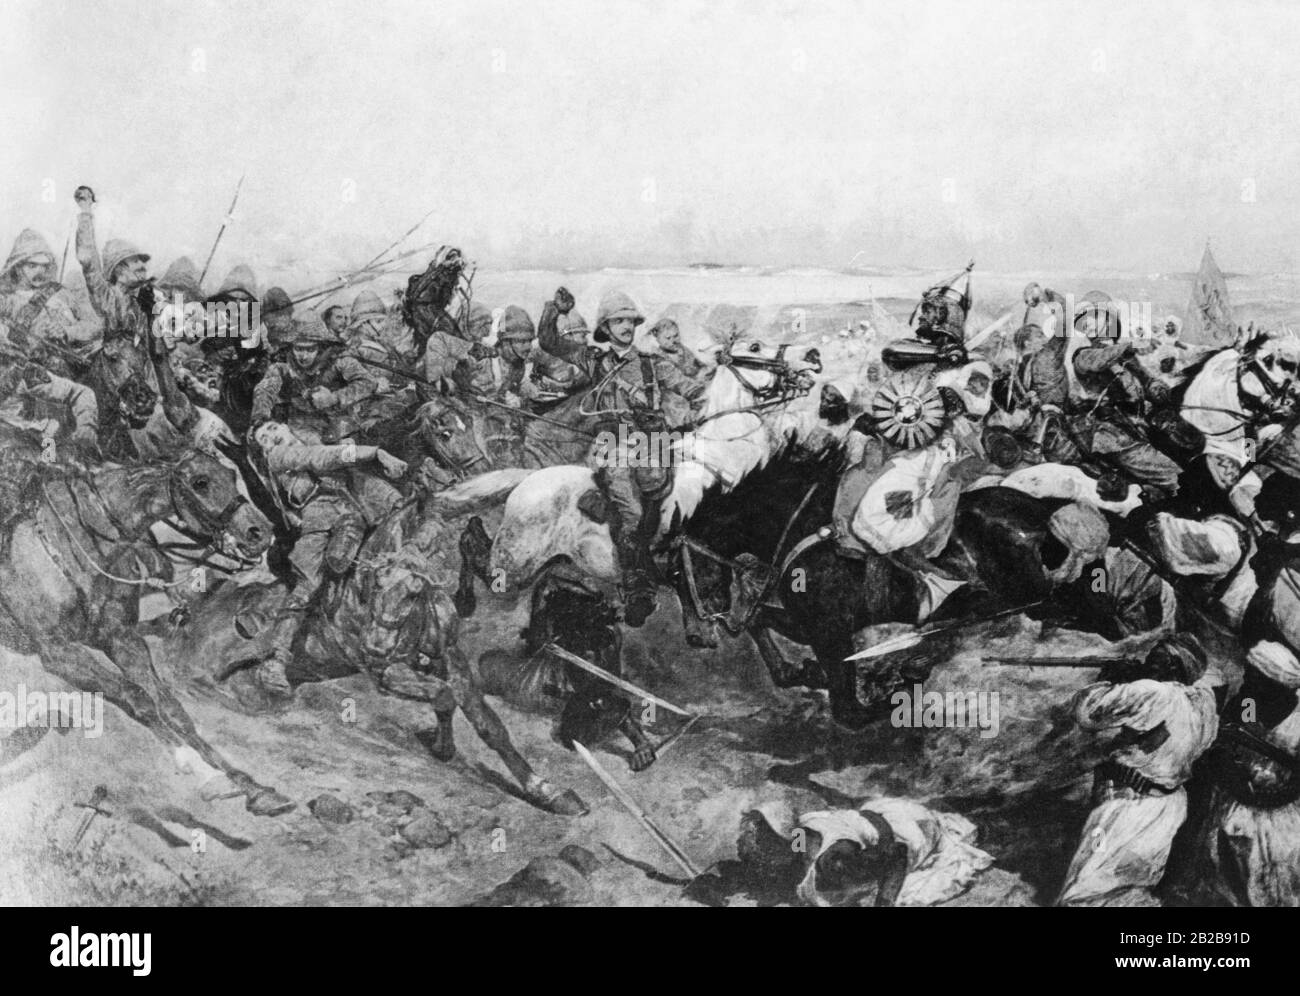 Zeichnung der Schlacht von Omdurman in der Nähe von Khartum. In dieser Schlacht besiegten die britischen Truppen die Armee der Mahdisten und gewannen politische Kontrolle über ganz Ägypten. Der Mahdi-Aufstand, der von 1881 bis 1898 stattfand, war eine Rebellion gegen die Anglo-Ägyptische Herrschaft in den Sudanprovinzen. Stockfoto